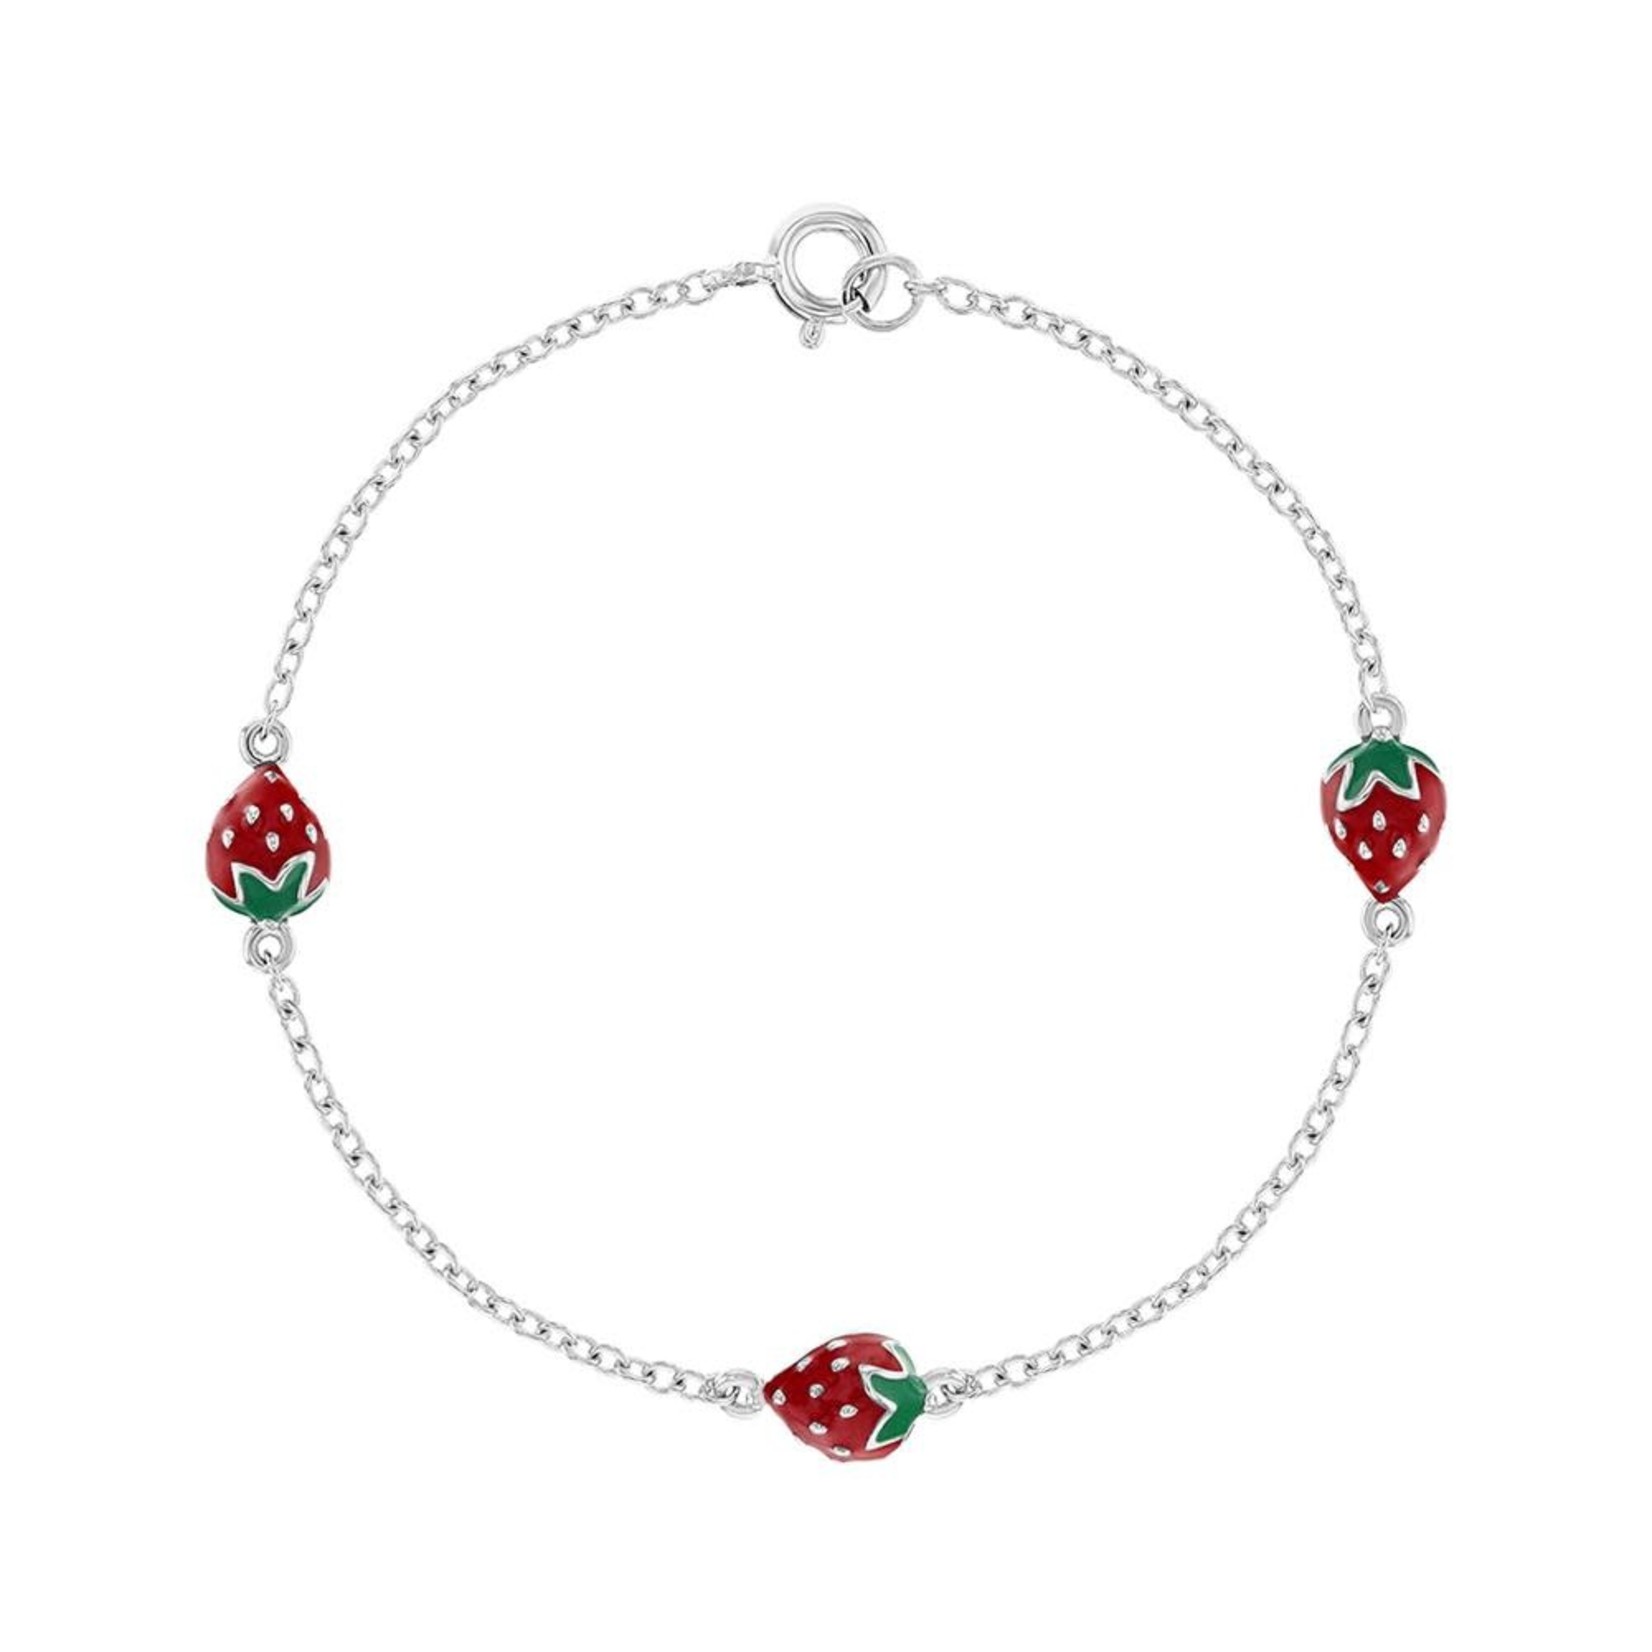 In Season Jewelry Silver 6" Cute Red Enamel Strawberries Bracelet